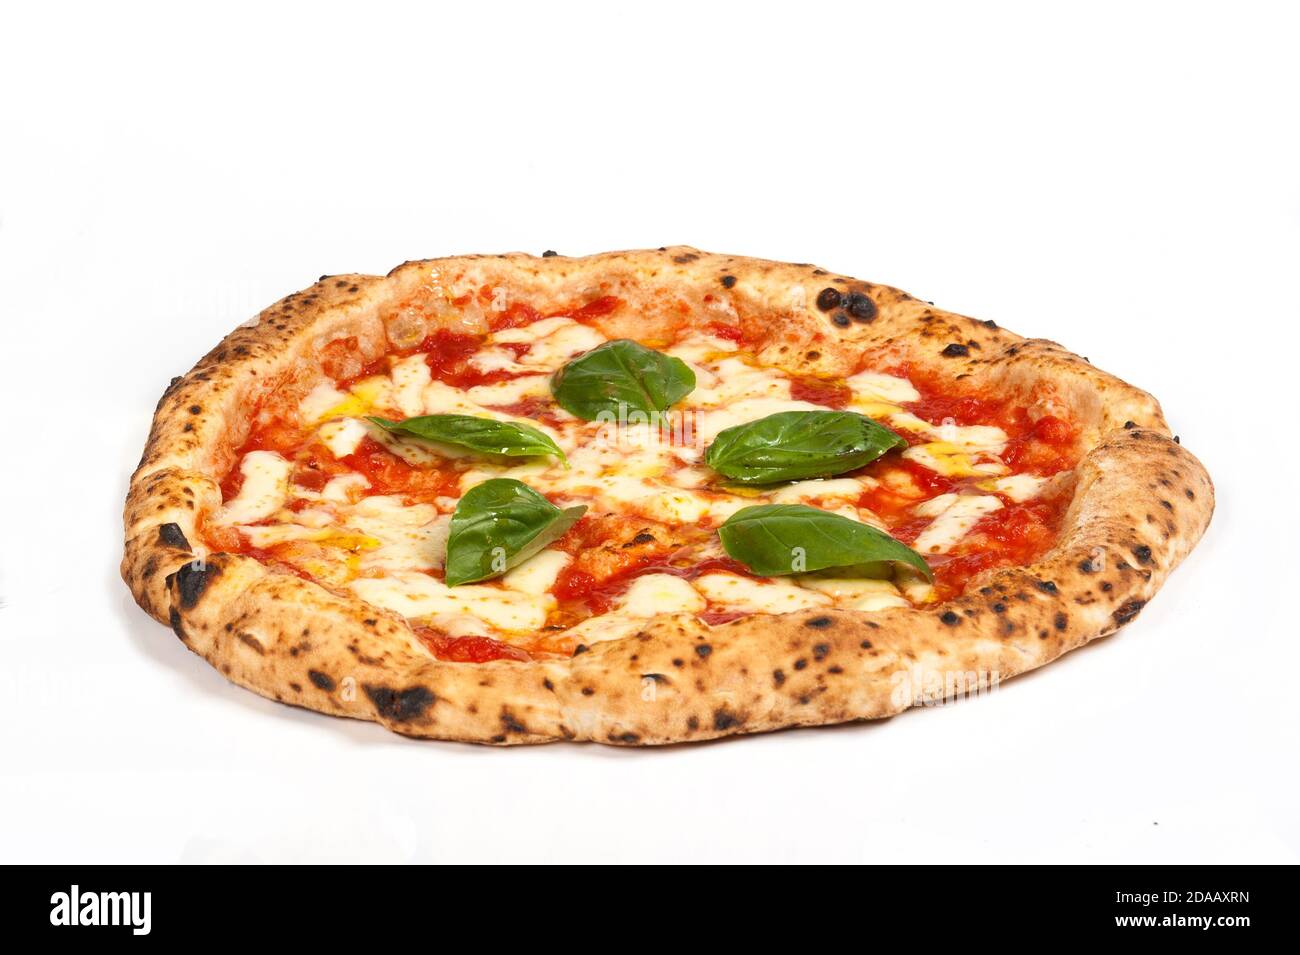 пицца из печи неаполитанская фото 102